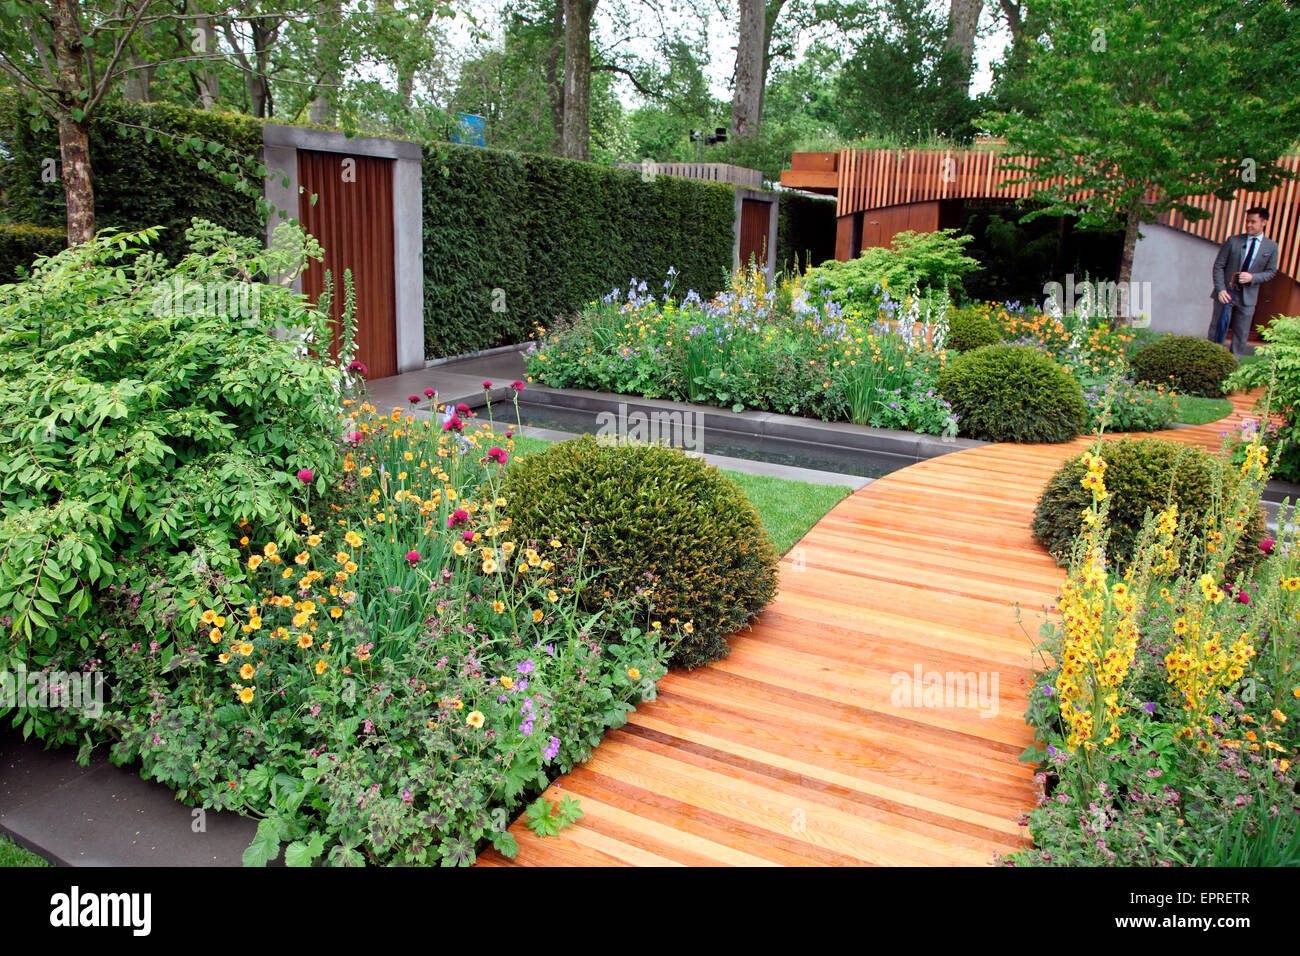 Homebase Garden par Adam Frost au RHS Chelsea Flower Show 2015. Banque D'Images